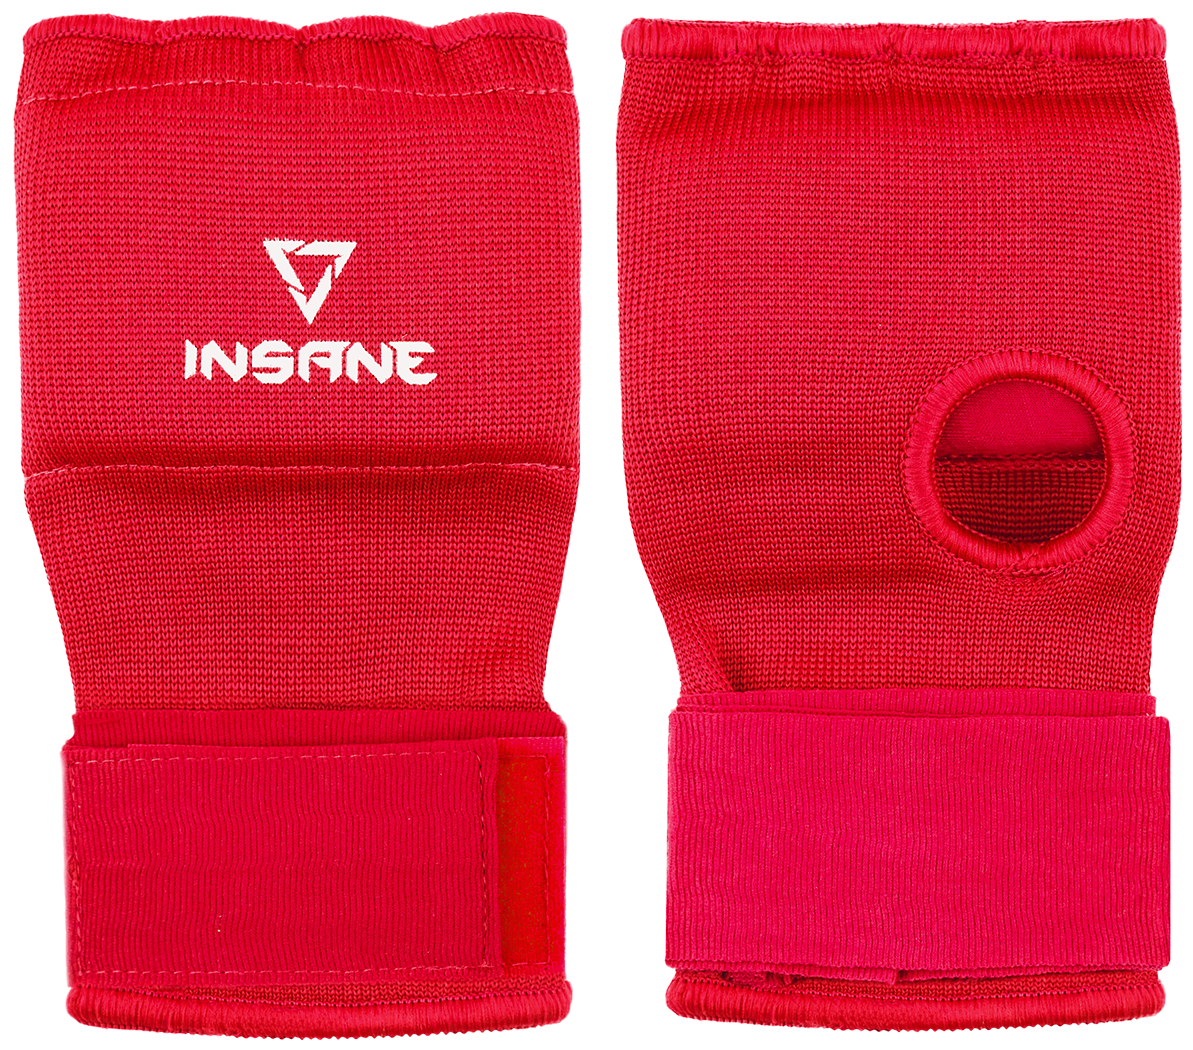 Перчатки внутренние для бокса Insane Dash, полиэстер/спандекс, красный, L